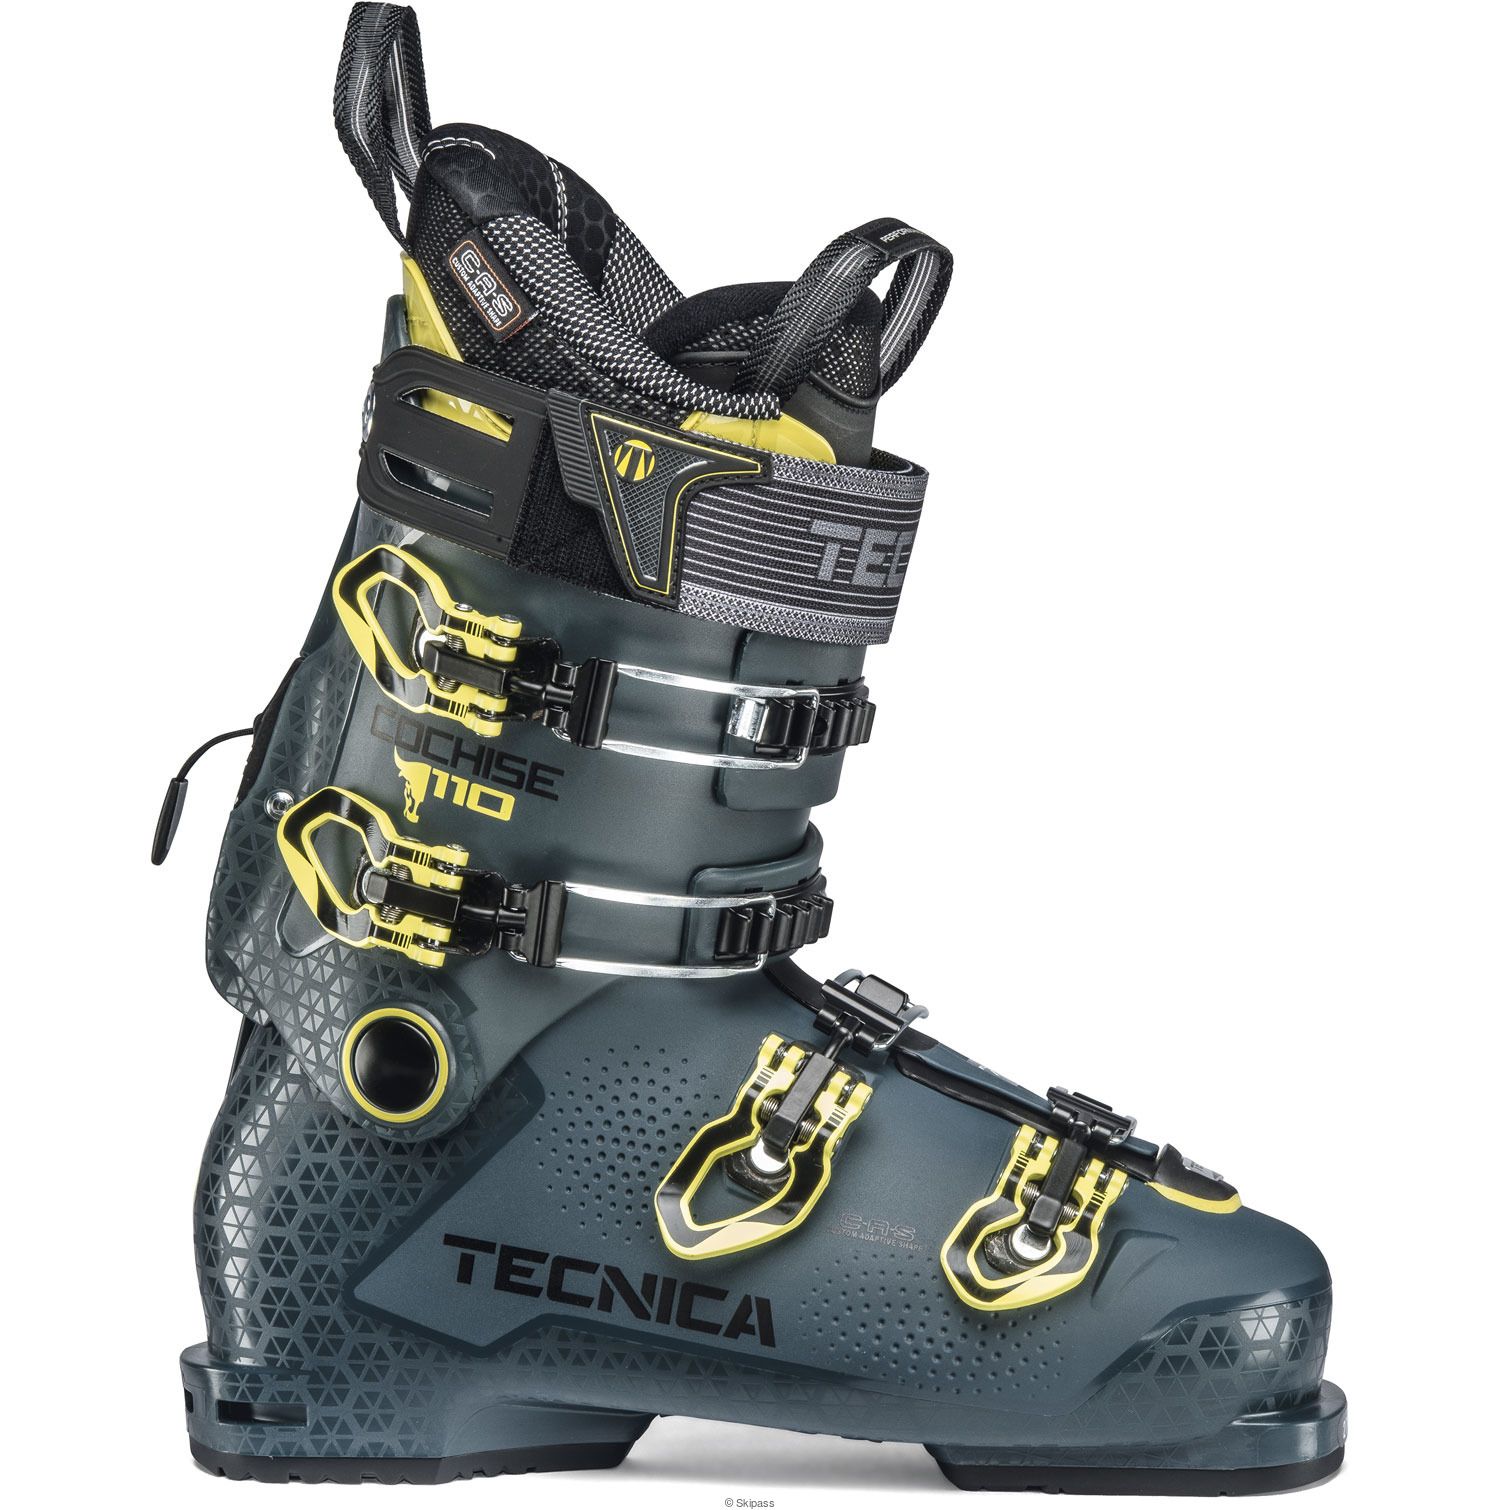 Chaussures de ski Cochise 110 2020